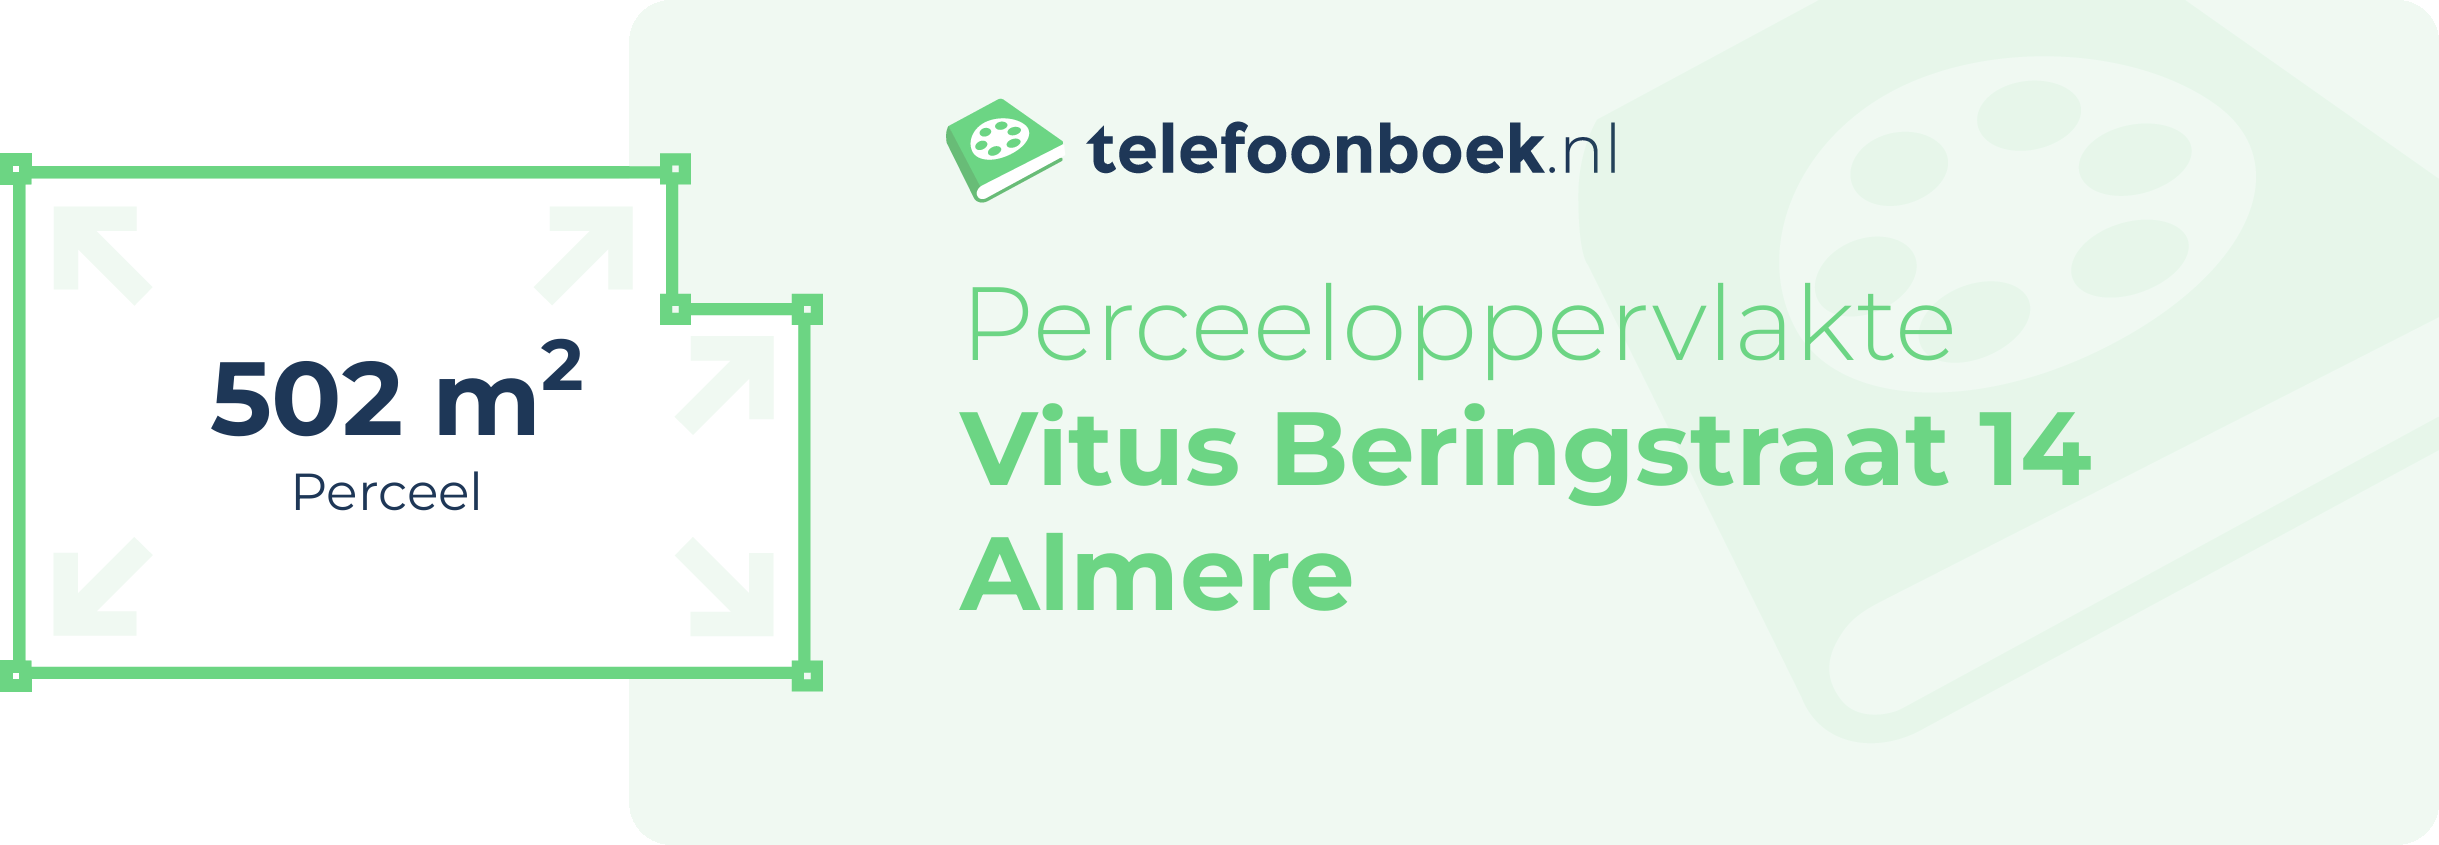 Perceeloppervlakte Vitus Beringstraat 14 Almere